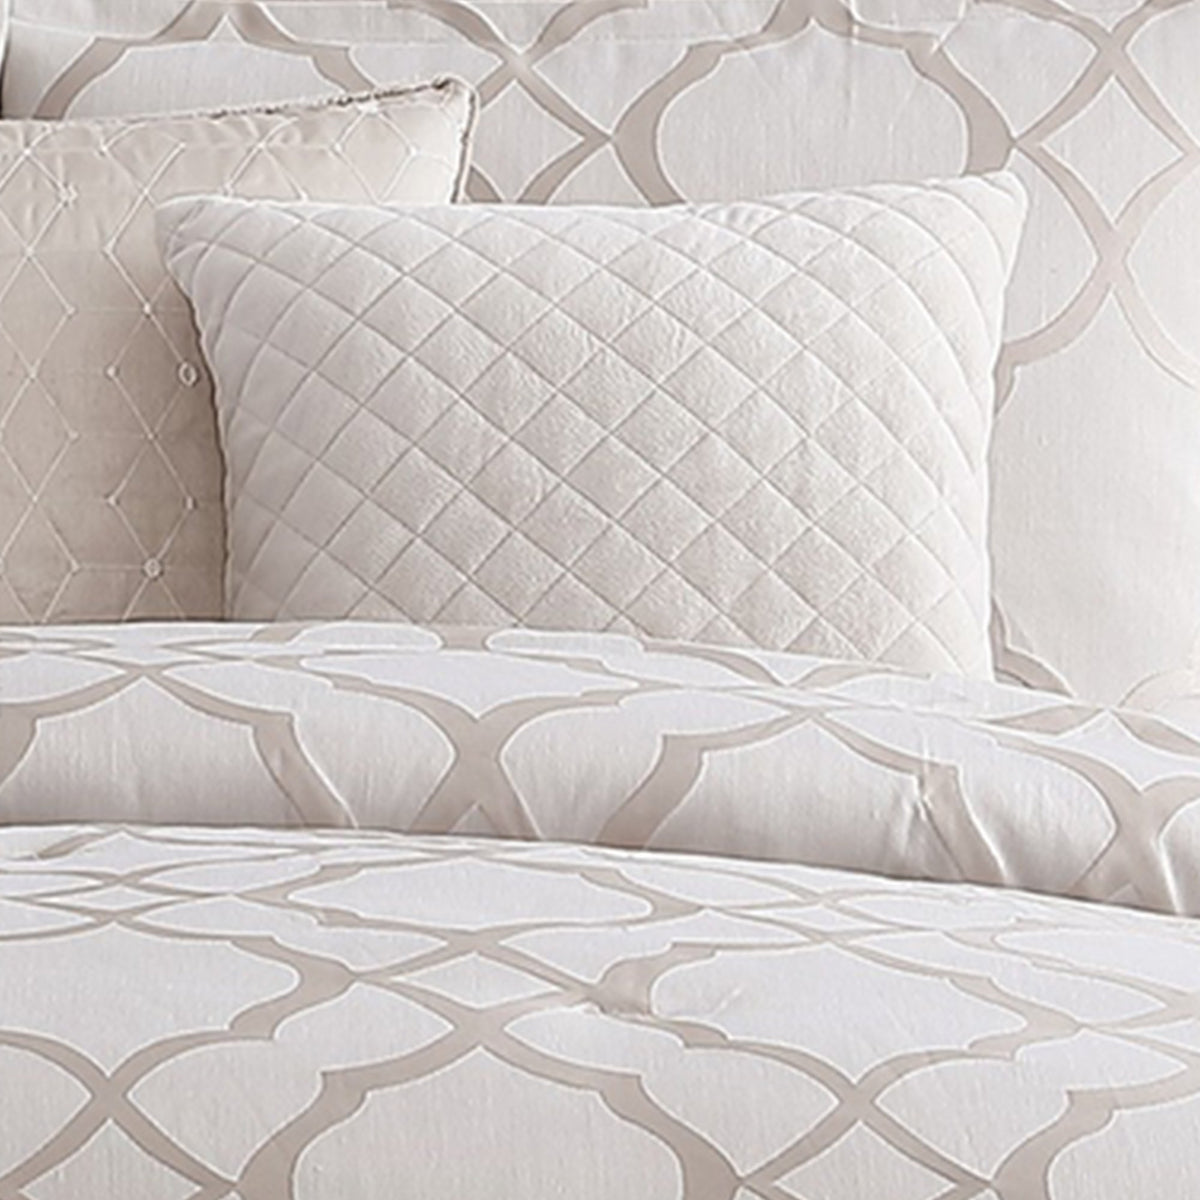 10 Piece King Size Fabric Comforter Set with Quatrefoil Prints, White - BM225201